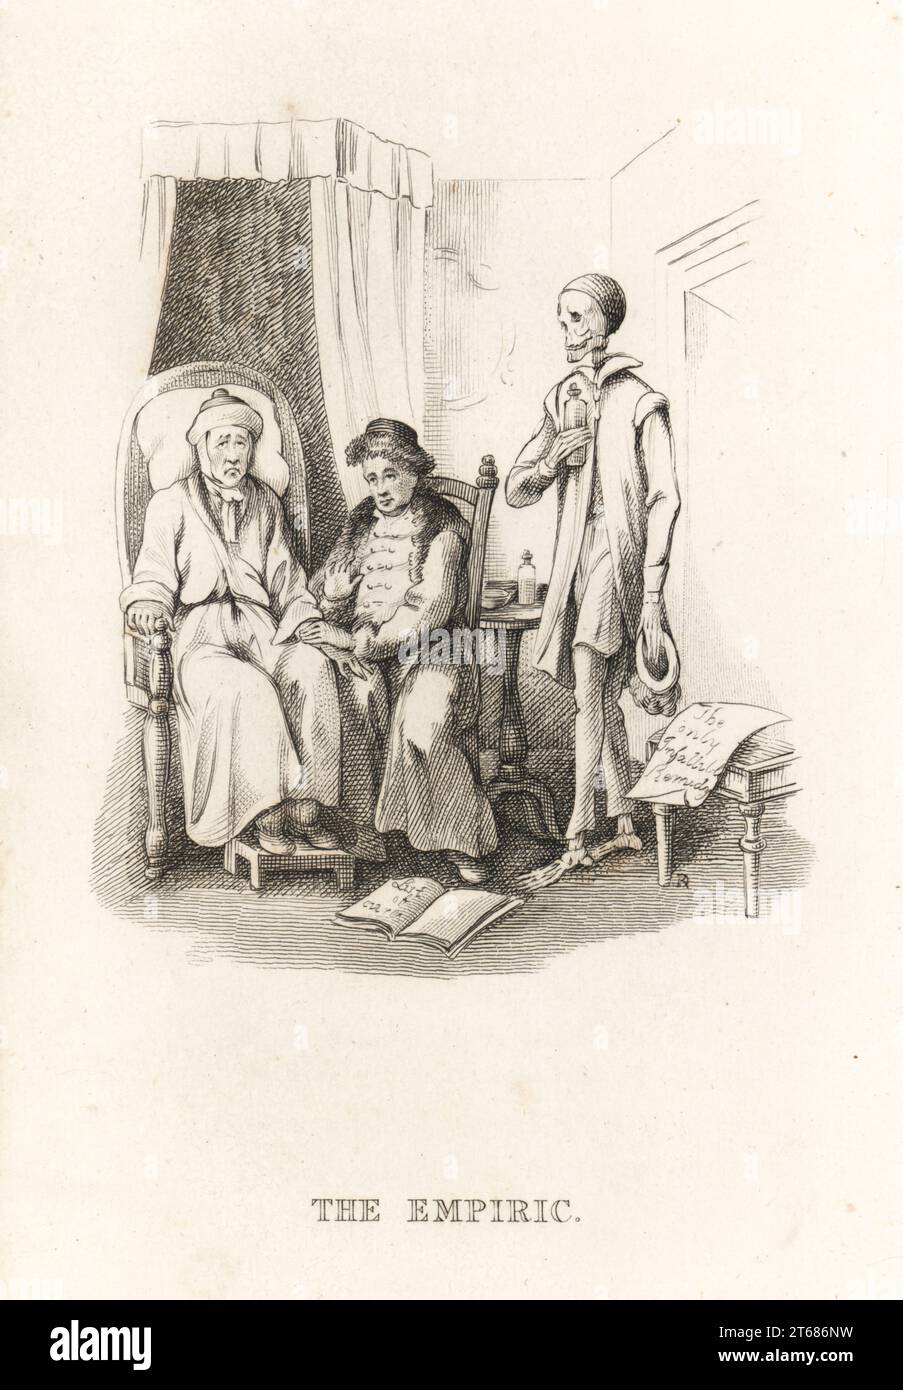 Lo scheletro della morte e il medico ciarlatano. La morte entra nella stanza con una bottiglia di medicina mentre la montagna prende il polso di un uomo malato su una sedia con un poggiapiedi. Un rotolo con l'unica Remedy infallibile sulla sedia. L'empirico. Illustrazione disegnata e incisa su acciaio da Richard Dagley dalle sue azioni di morte, consistenti in numerose composizioni originali in versi e prosa, J. Andrews, Londra, 1827. Dagley (1761-1841) è stato un pittore, illustratore e incisore inglese. Foto Stock